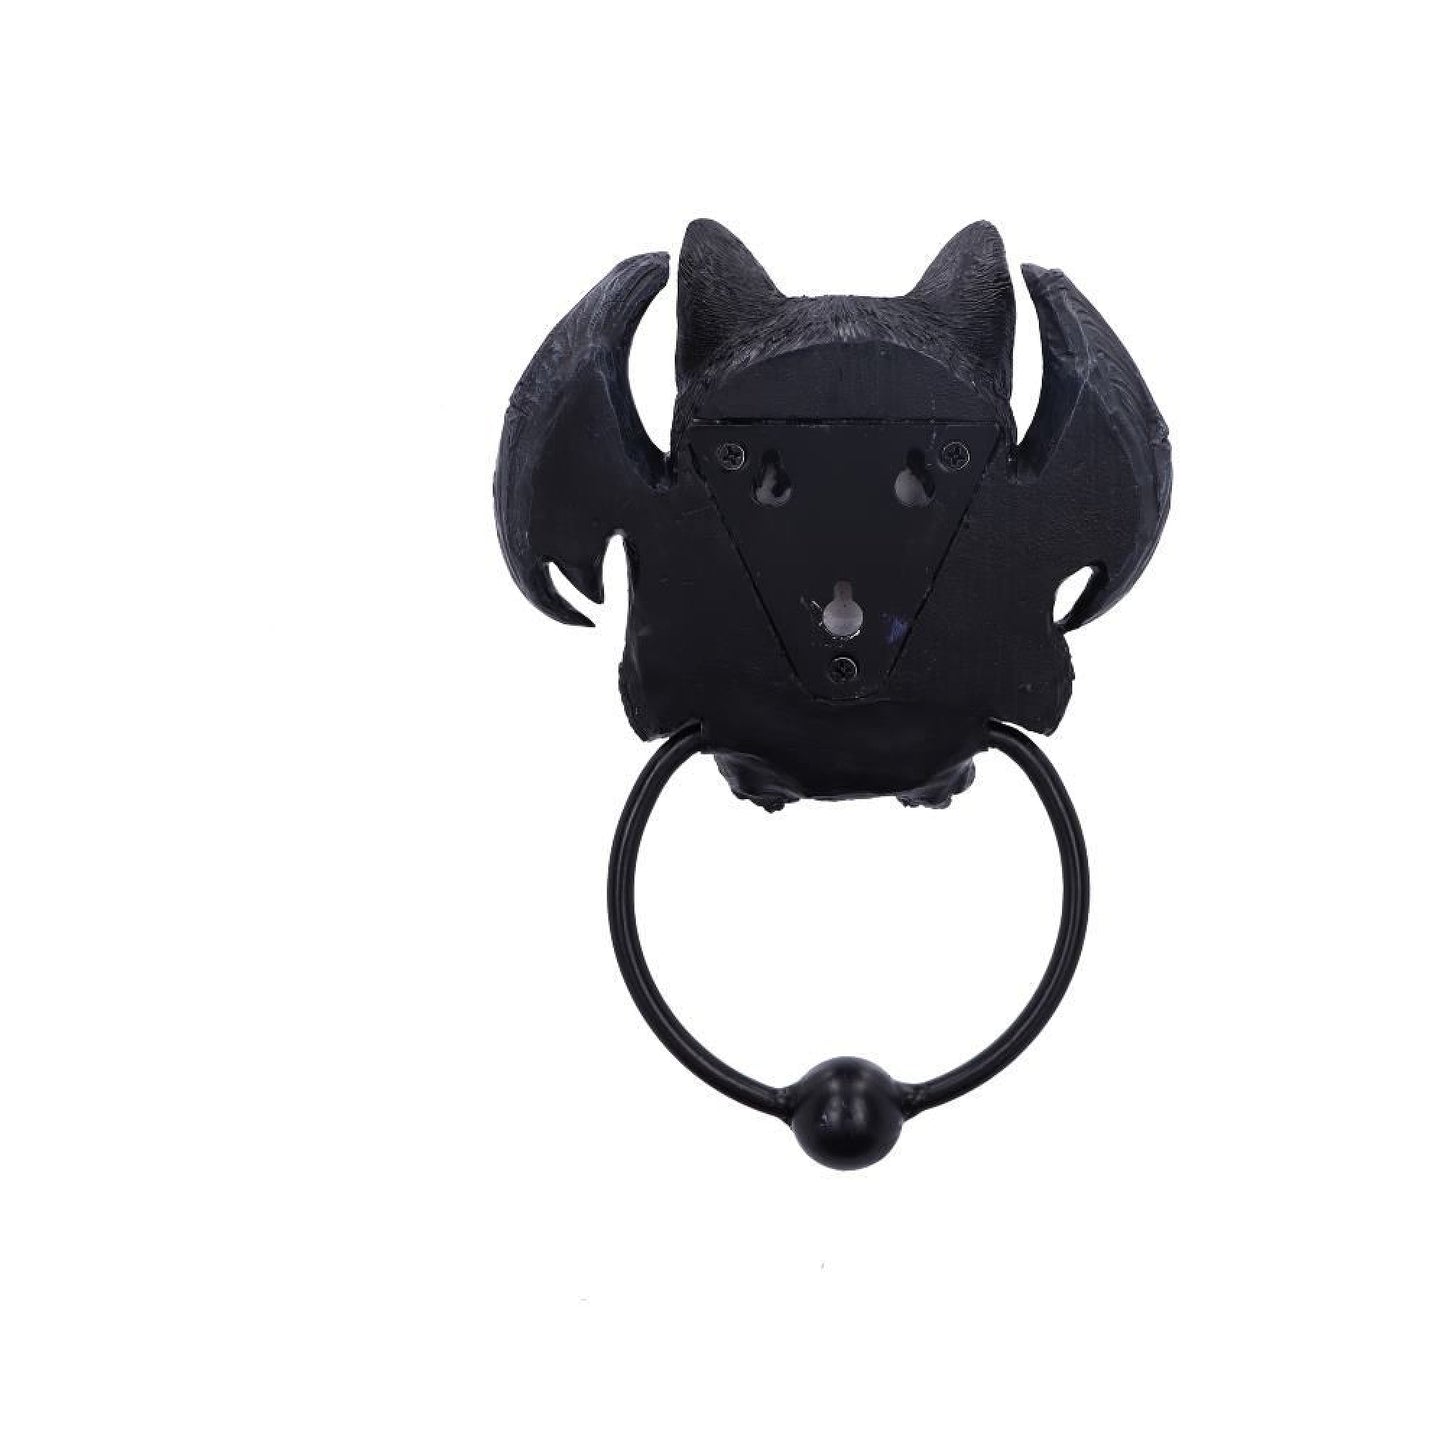 Vampuss Black Bat Cat Door Knocker